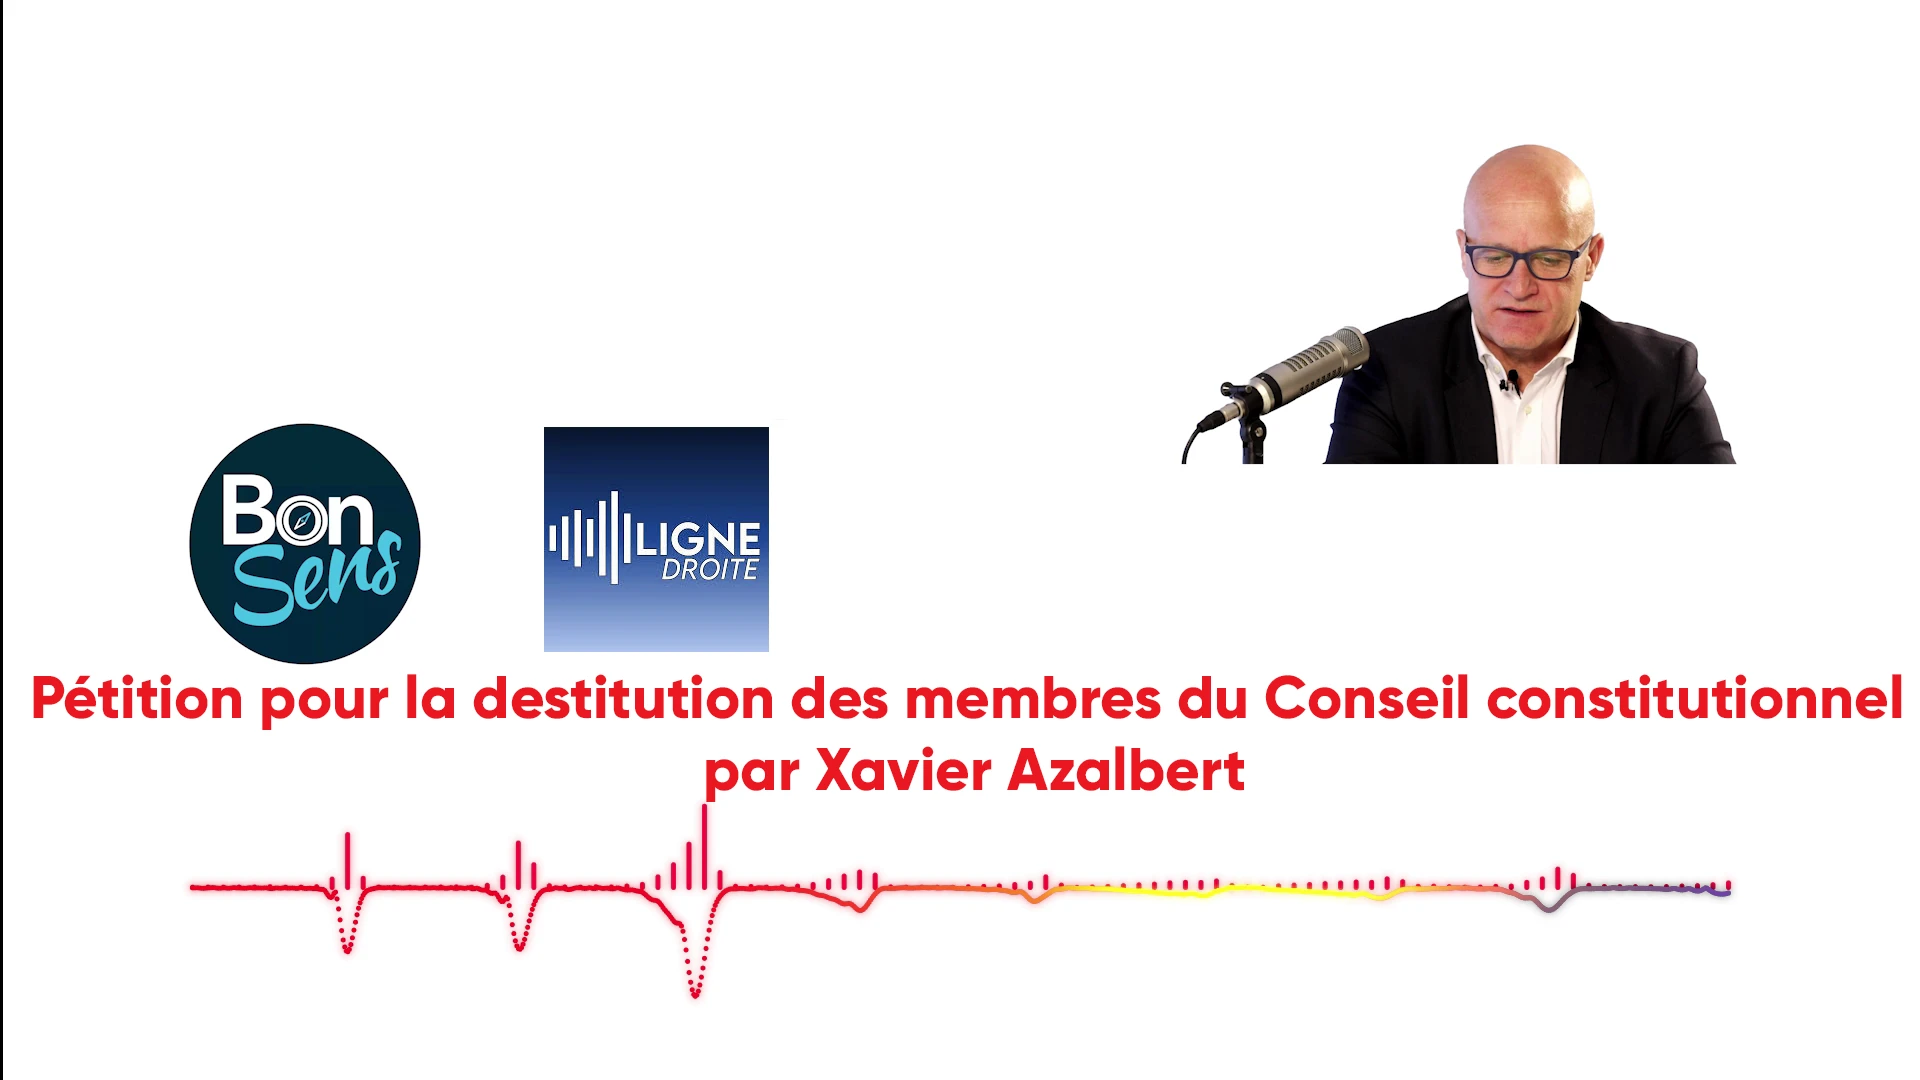 Pétition pour la destitution des membres du Conseil constitutionnel présentée par Xavier Azalbert de l’association «   Bonsens   » (audio/radio)